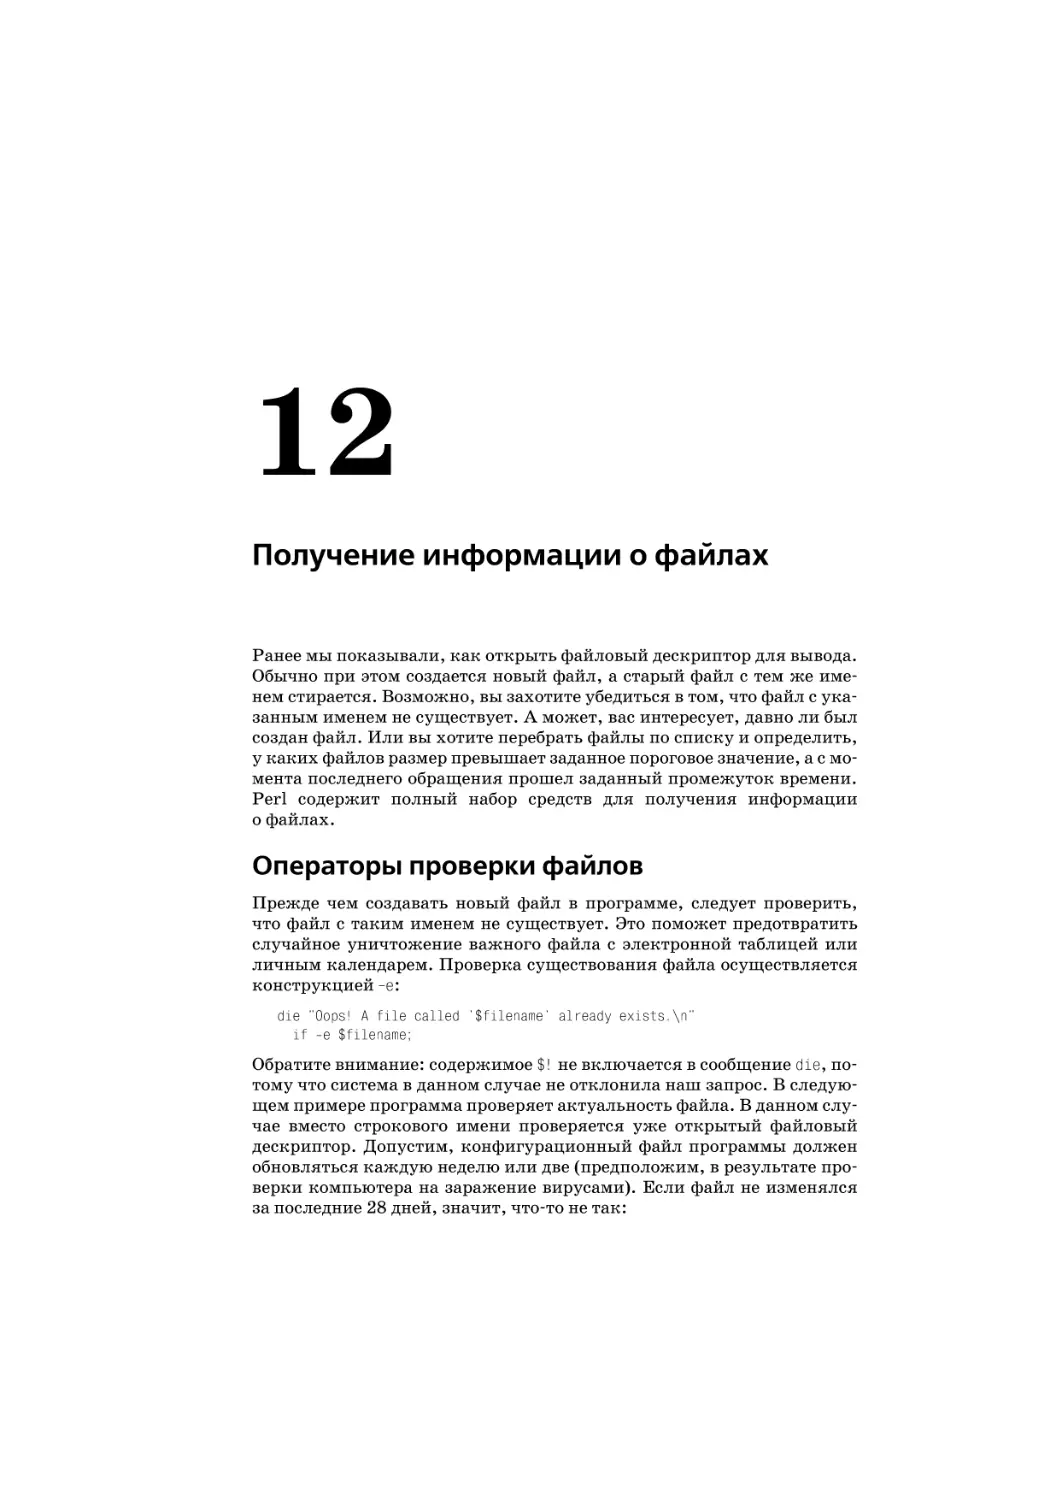 Глава 12. Получение информации о файлах
Операторы проверки файлов